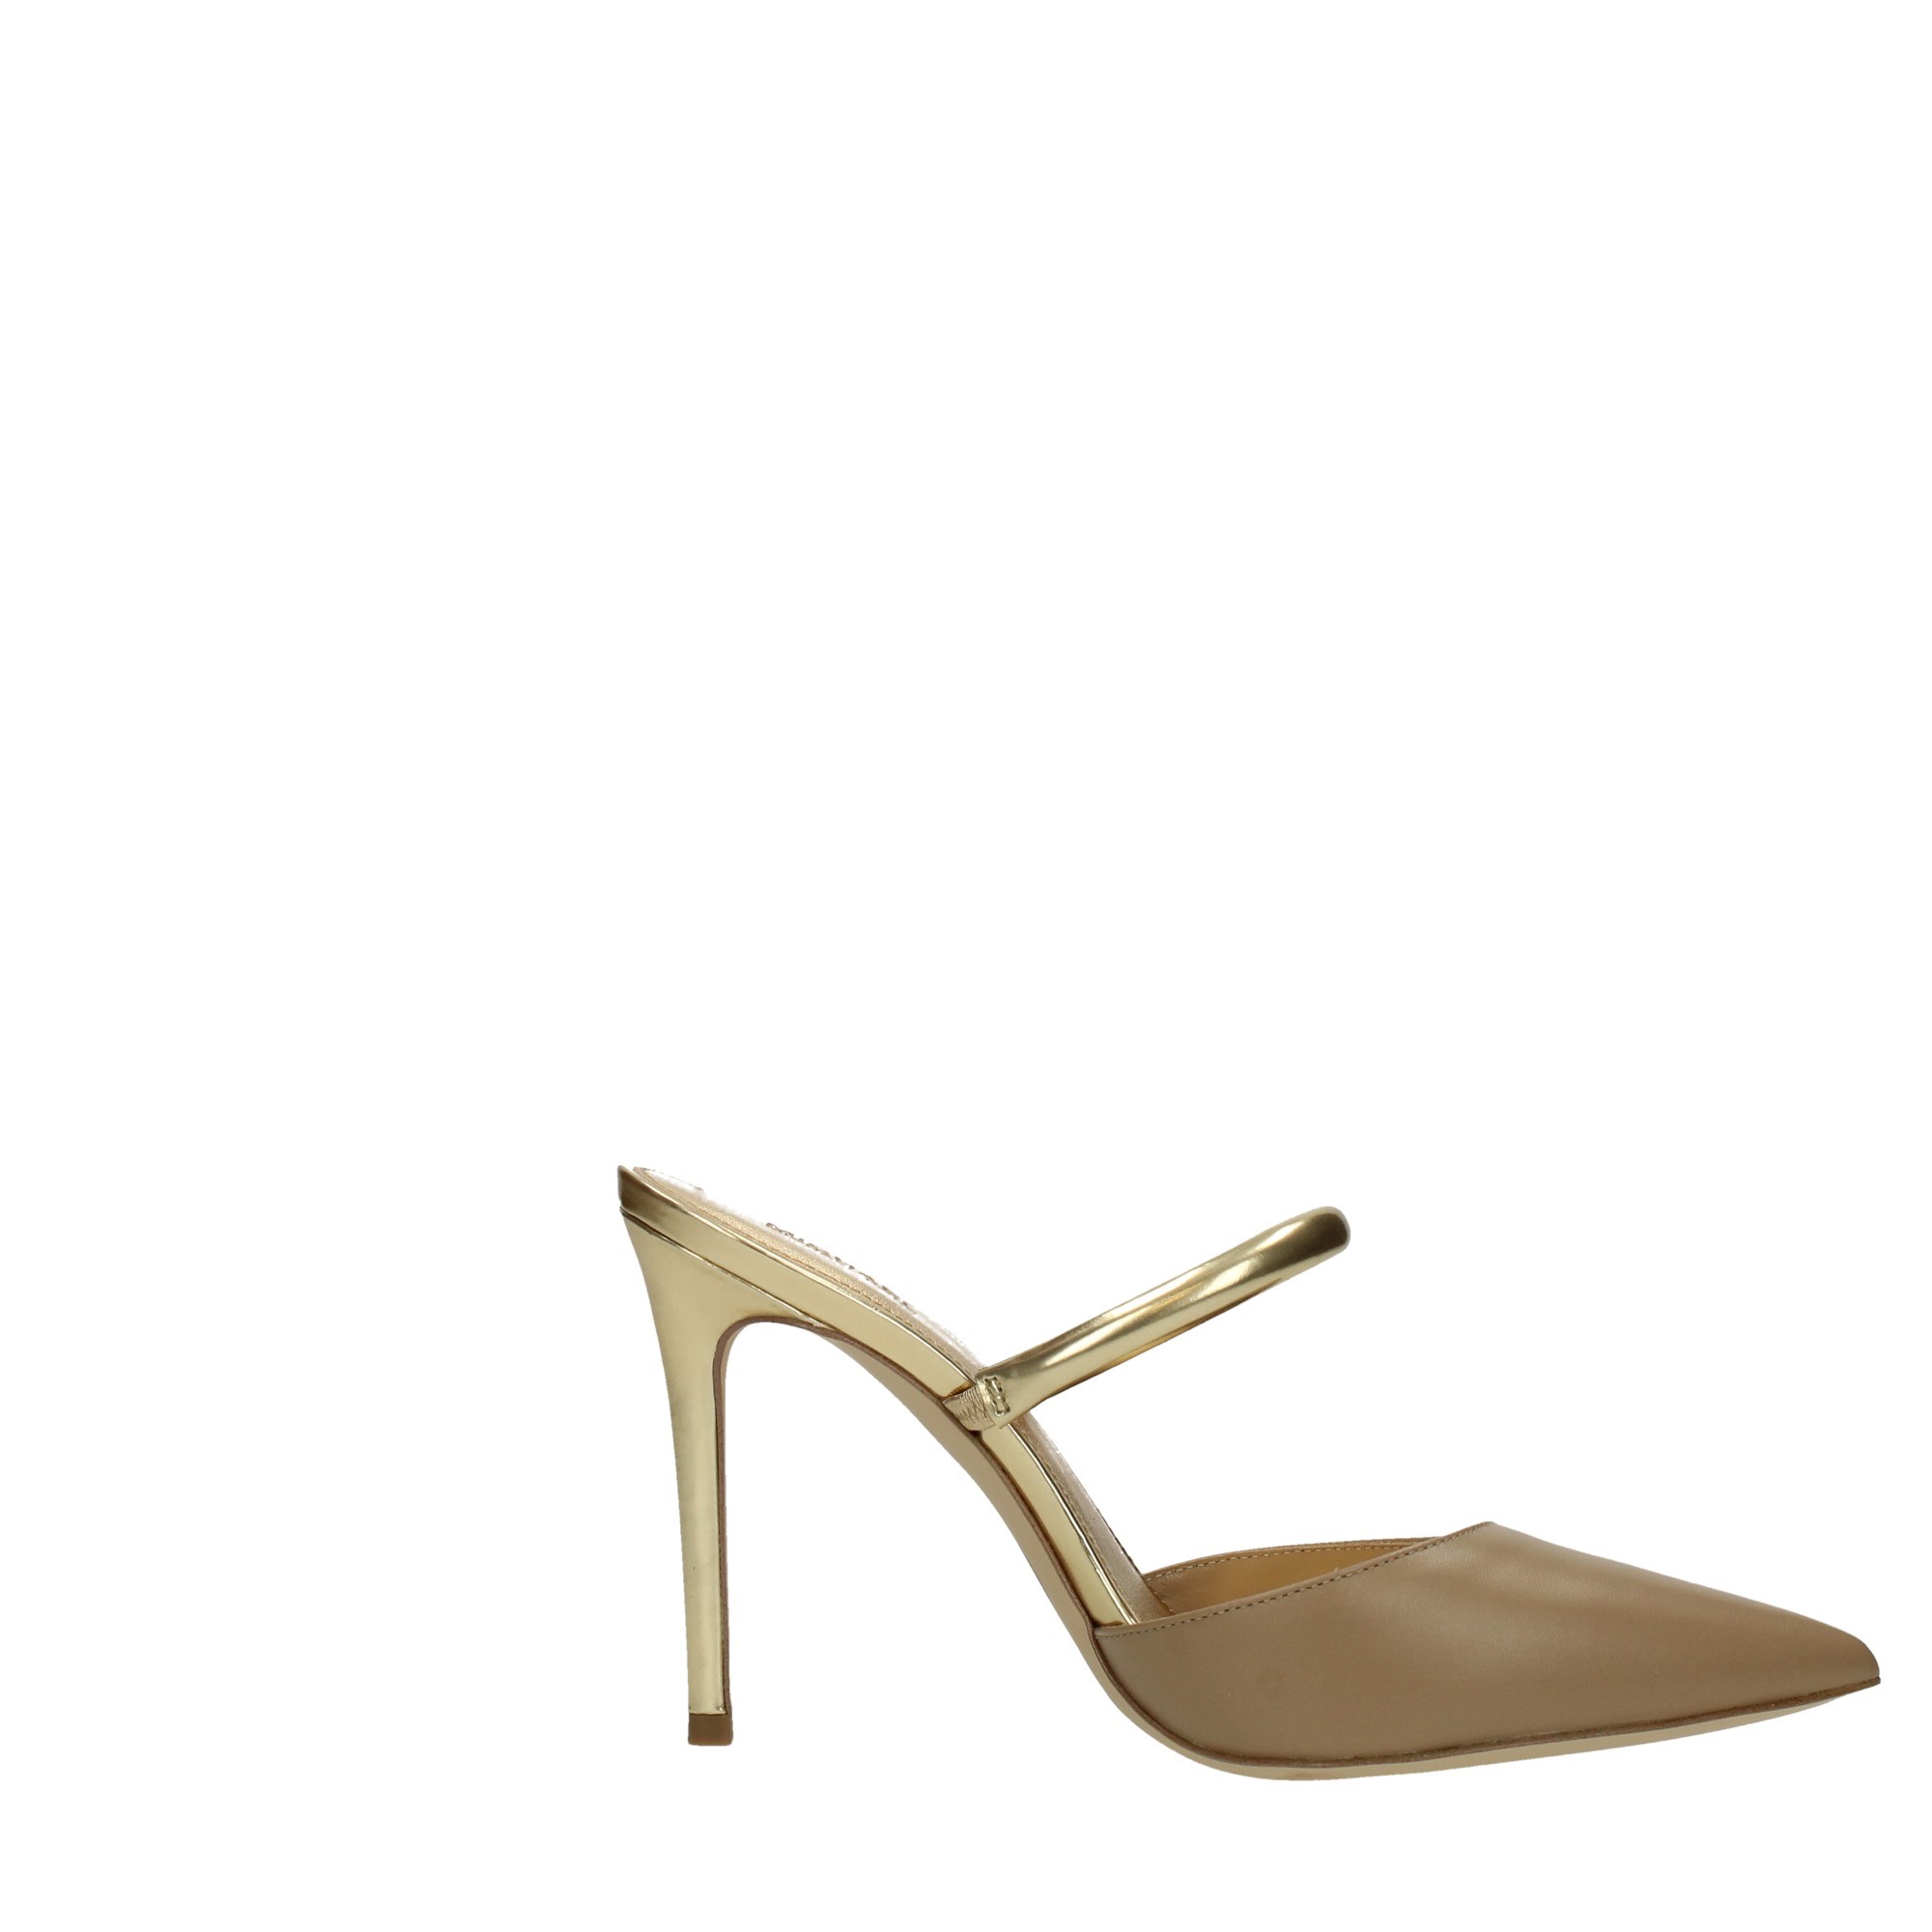 Michael Kors Shoes Women Elegant shoes 40R3JSHP1L